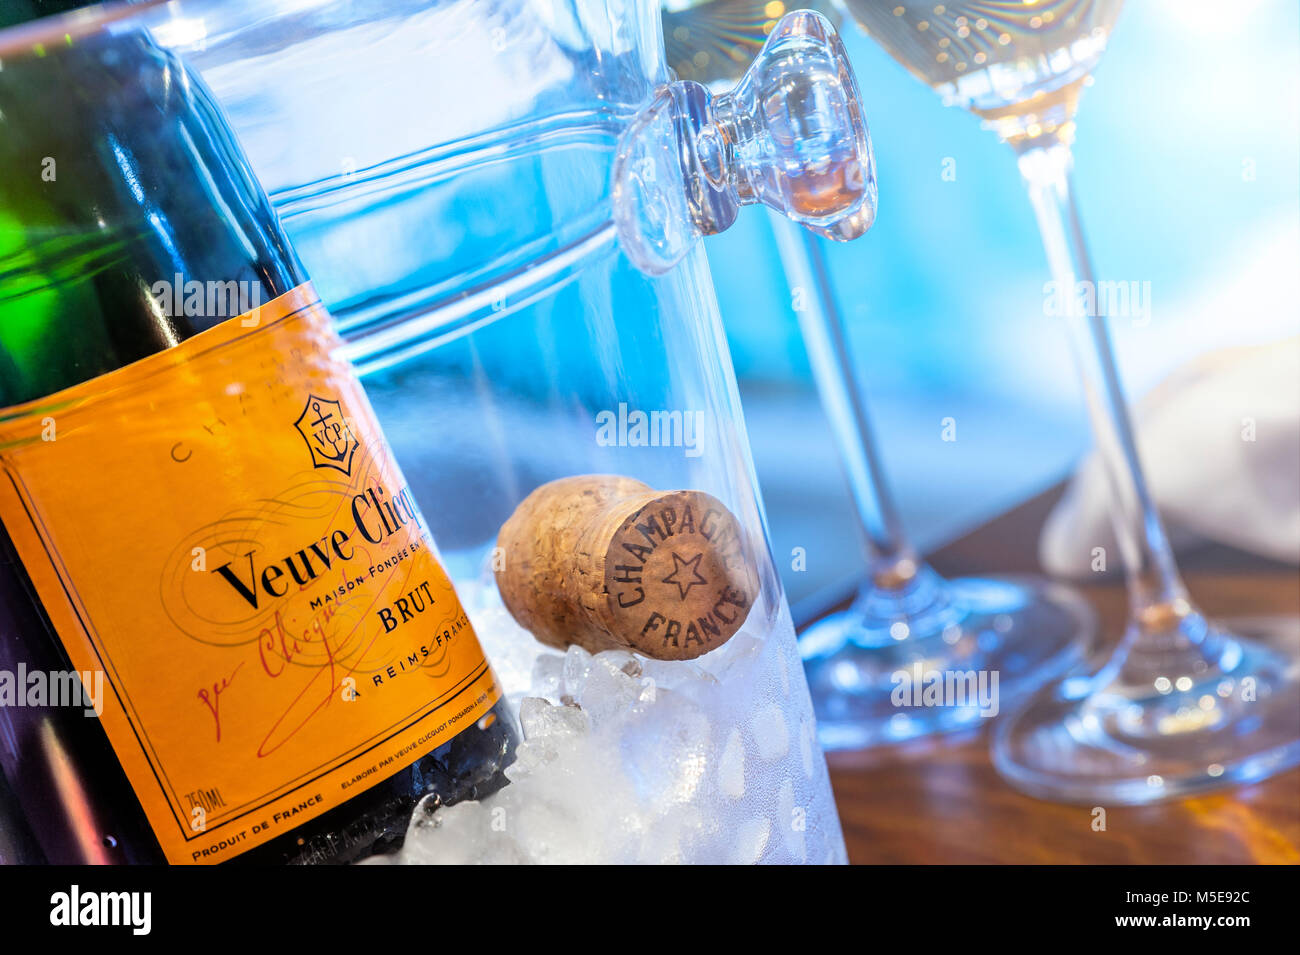 Bouteille de champagne veuve Clicquot sur glace avec liège et lunettes, cadre luxueux, piscine en arrière-plan avec coucher de soleil en fin d'après-midi Banque D'Images